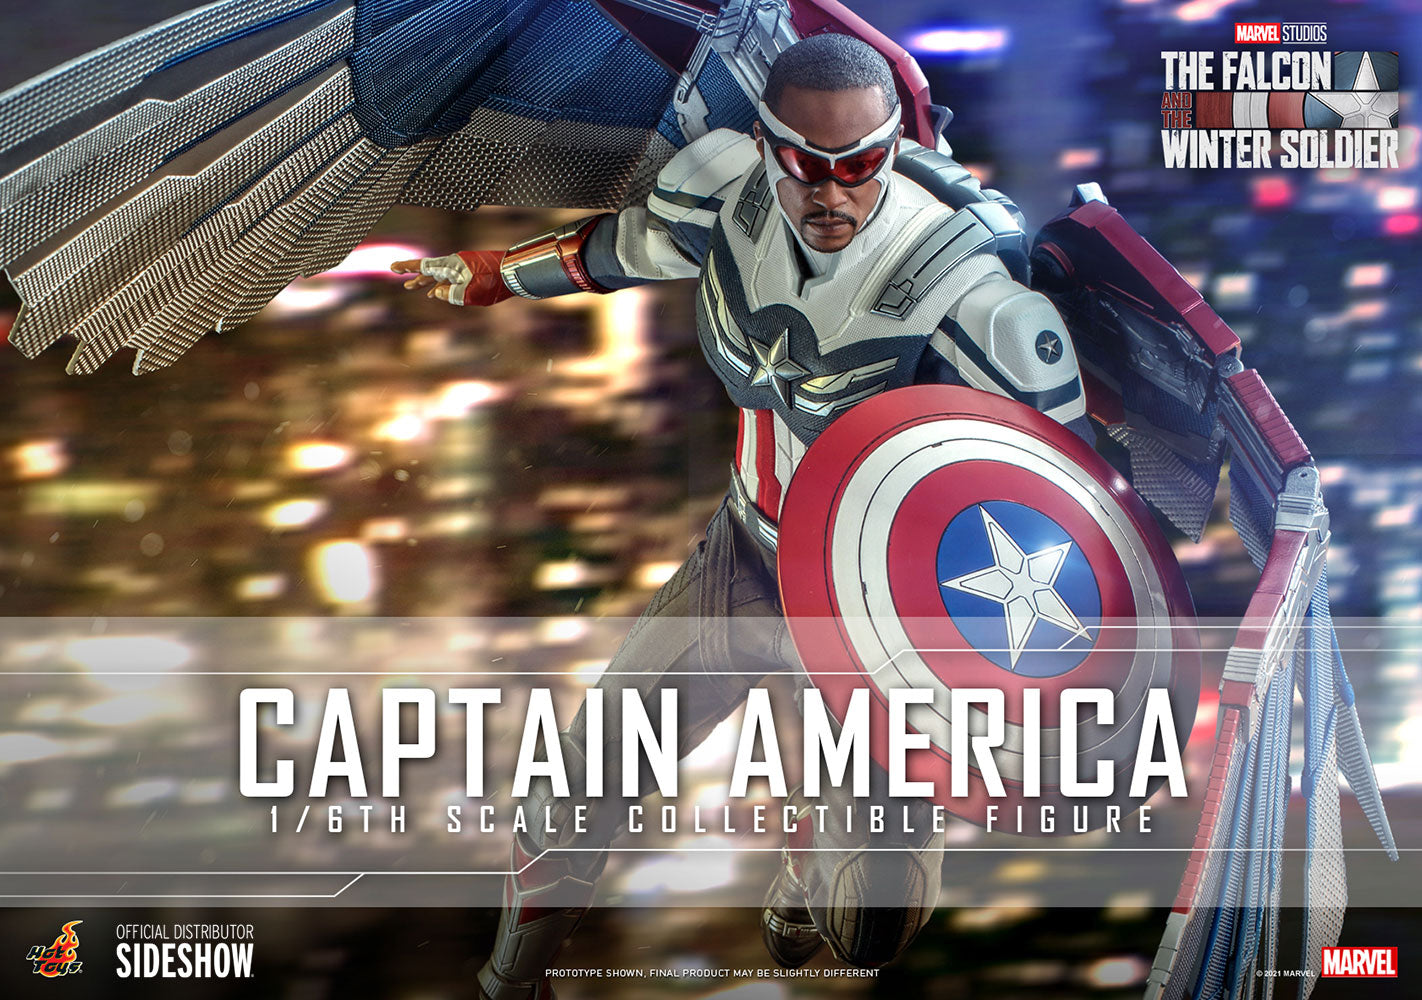 Hot Toys Marvel: Falcon y Winter Soldier - Captain America Falcon Escala 1/6